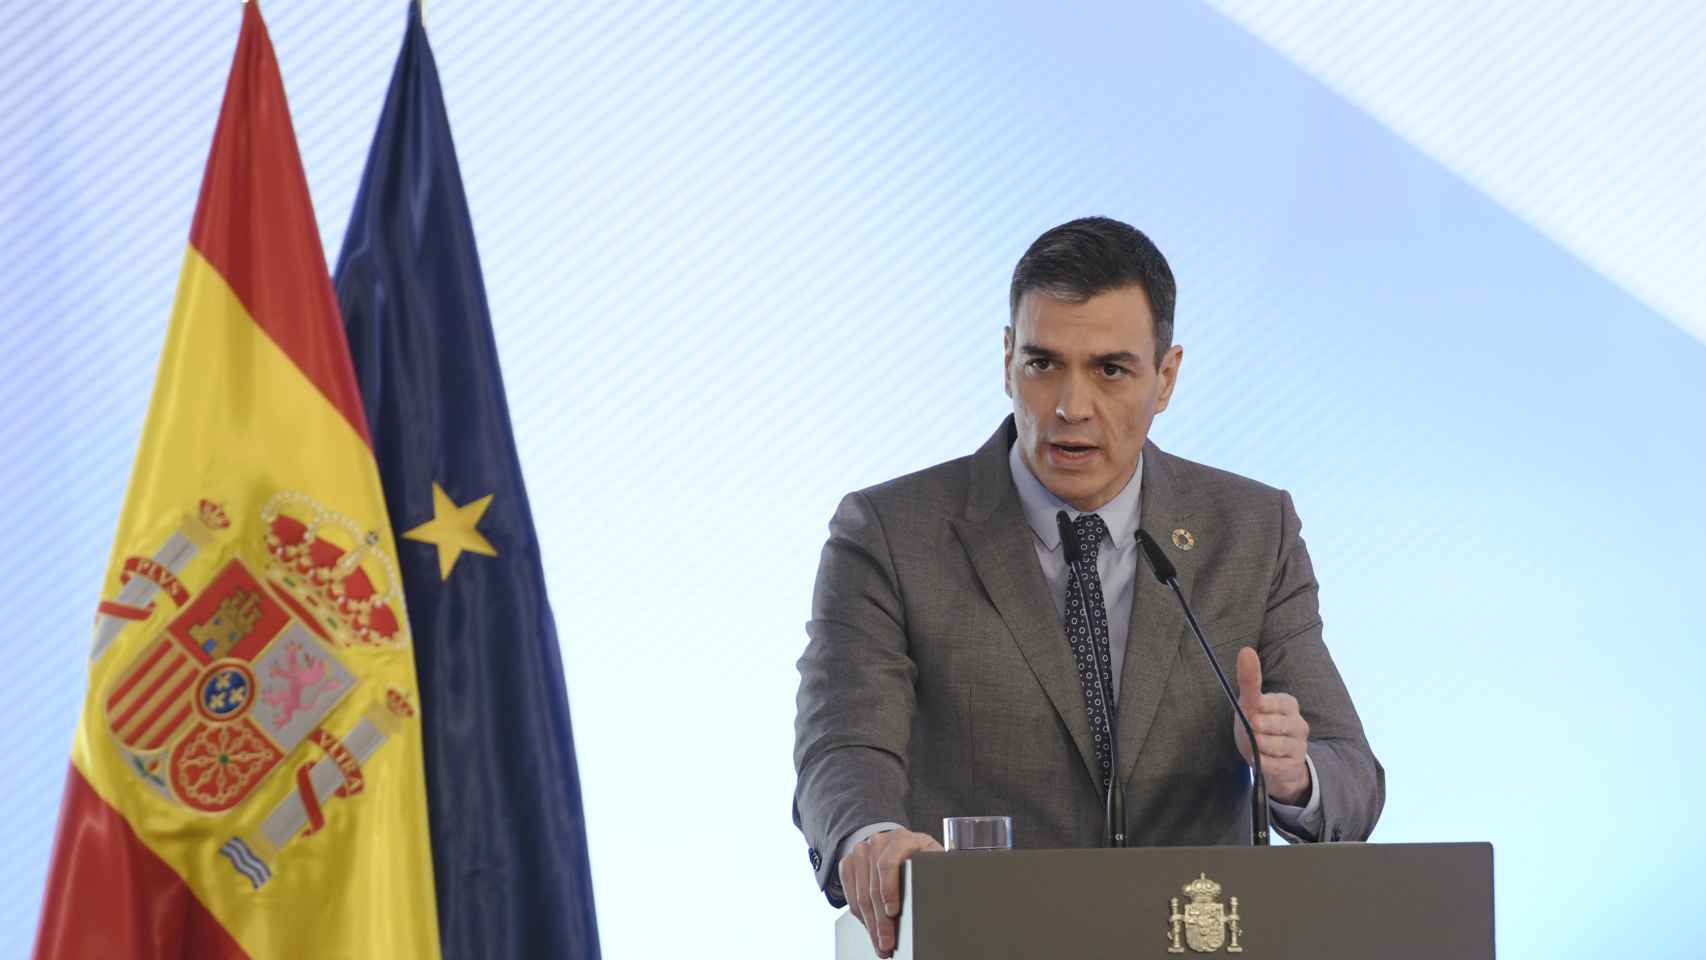 El presidente del Gobierno, Pedro Sánchez, preside el acto de firma del Protocolo sobre Alquiler Social de Viviendas, en La Moncloa, Madrid, (España), a 17 de febrero de 2021.